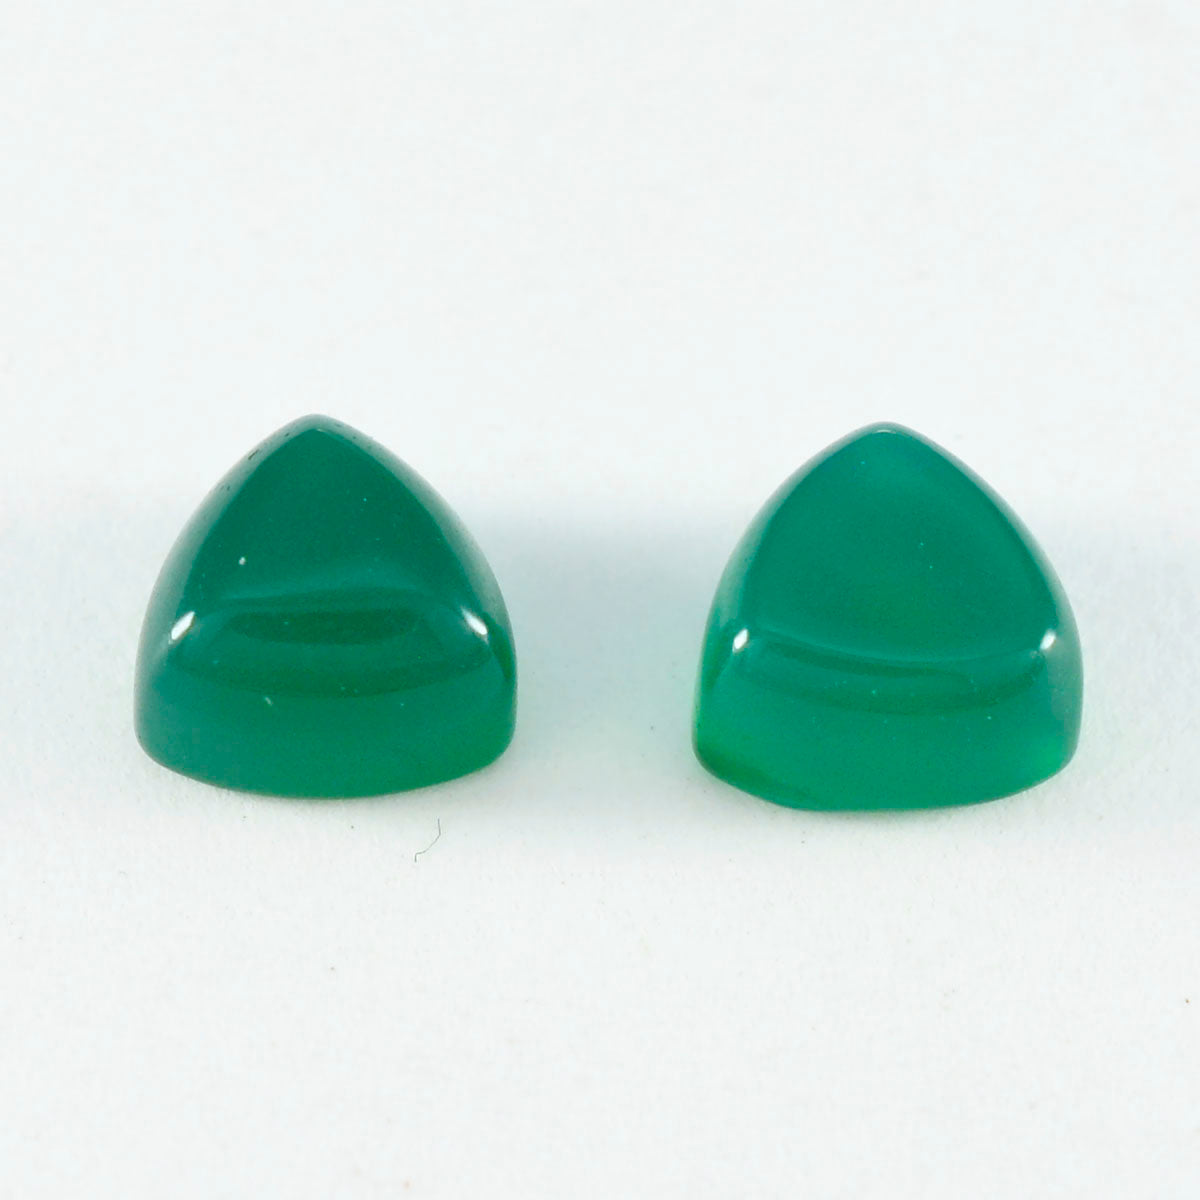 Riyogems 1PC Green Onyx Cabochon 14x14 mm Trillion Shape beauty Quality Gems